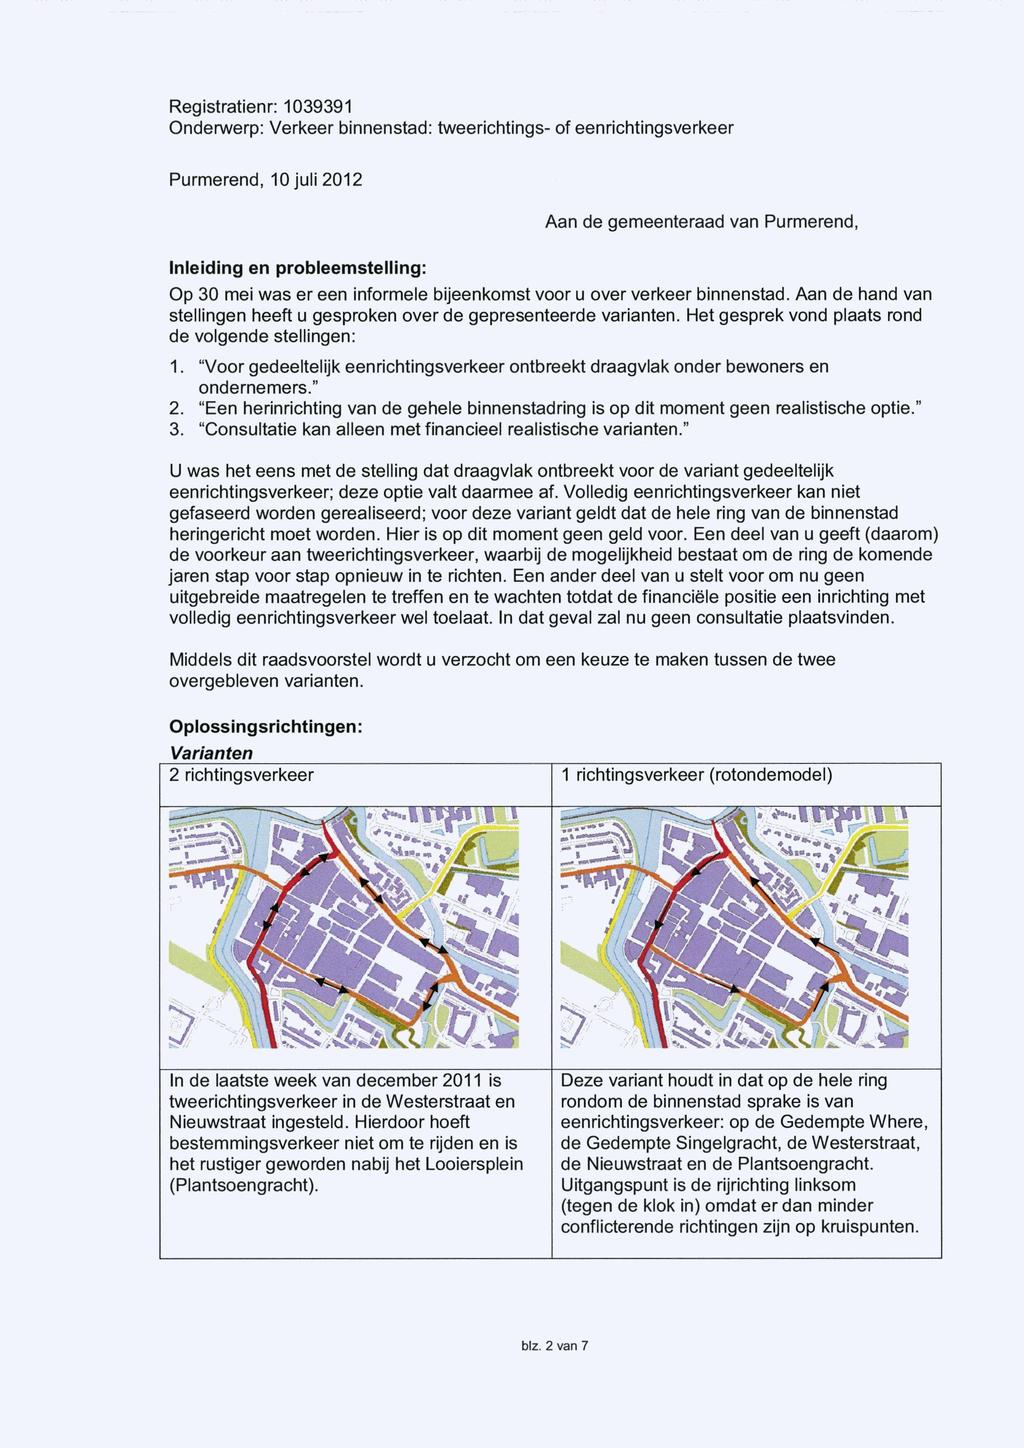 Purmerend, 10 juli 2012 Aan de gemeenteraad van Purmerend, Inleiding en probleemstelling: Op 30 mei was er een informele bijeenkomst voor u over verkeer binnenstad.